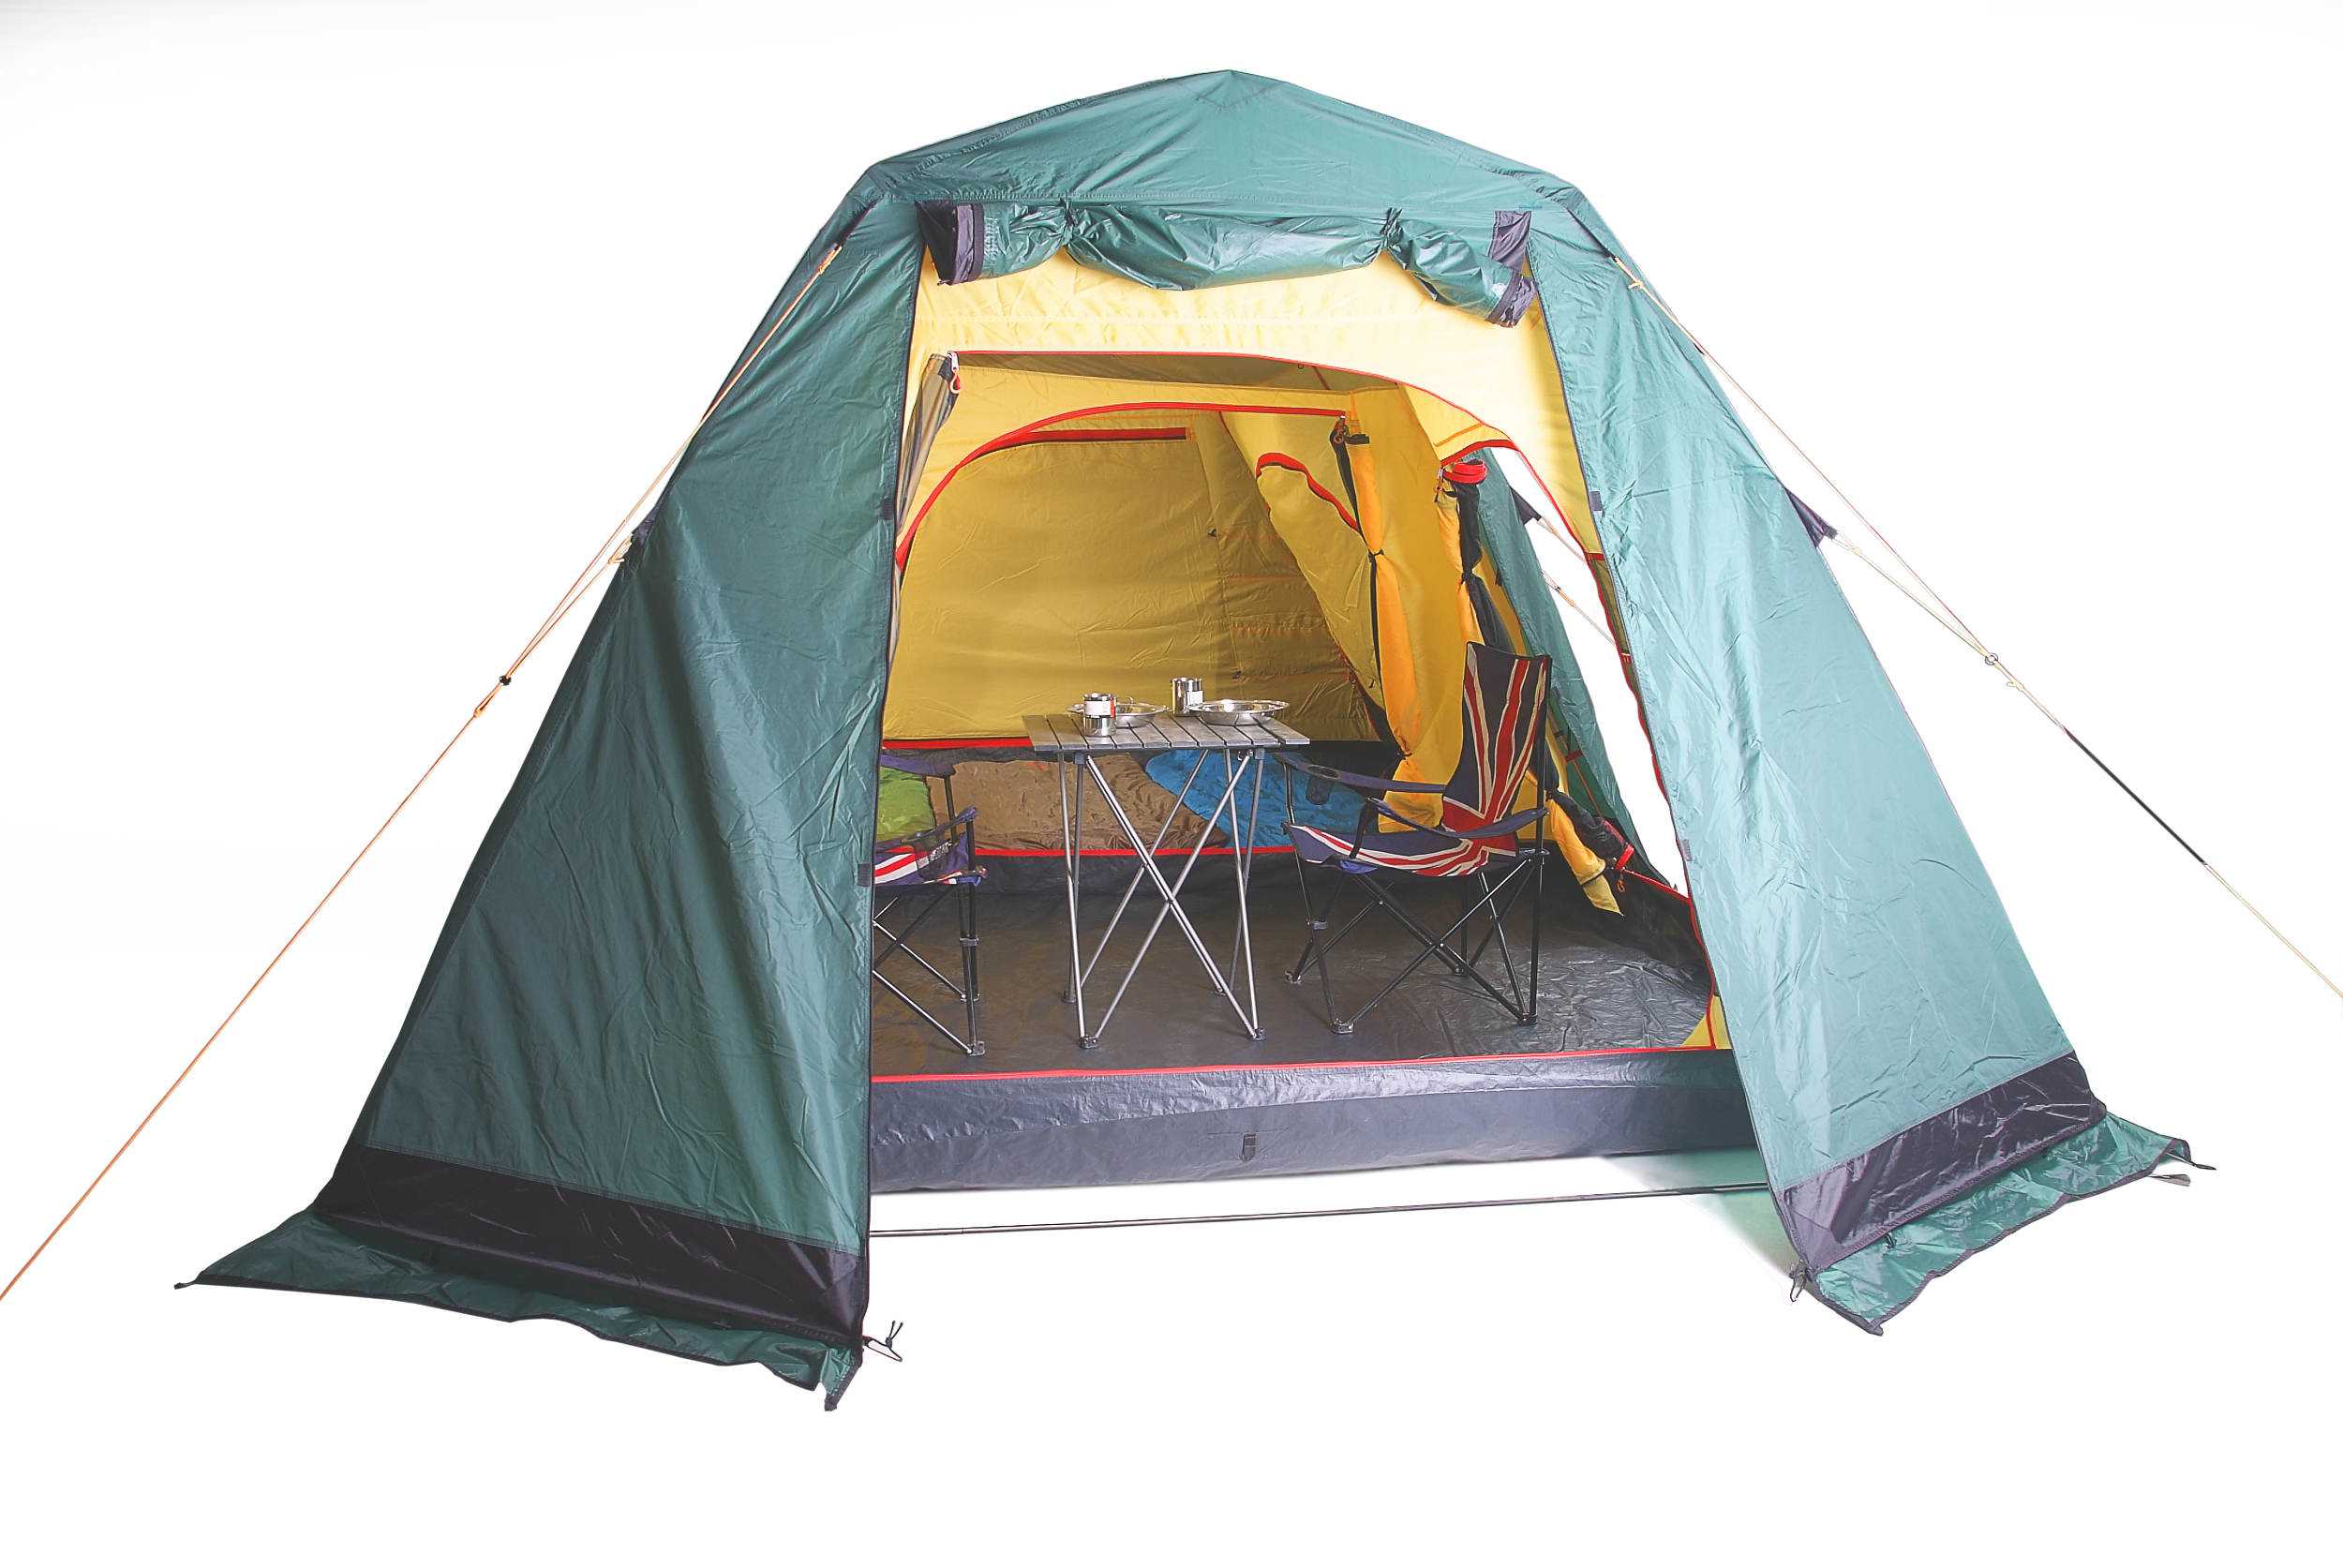 Как собрать 4-х местную быстросборную палатку - подробно об установке кемпингового туристического шатра с каркасом